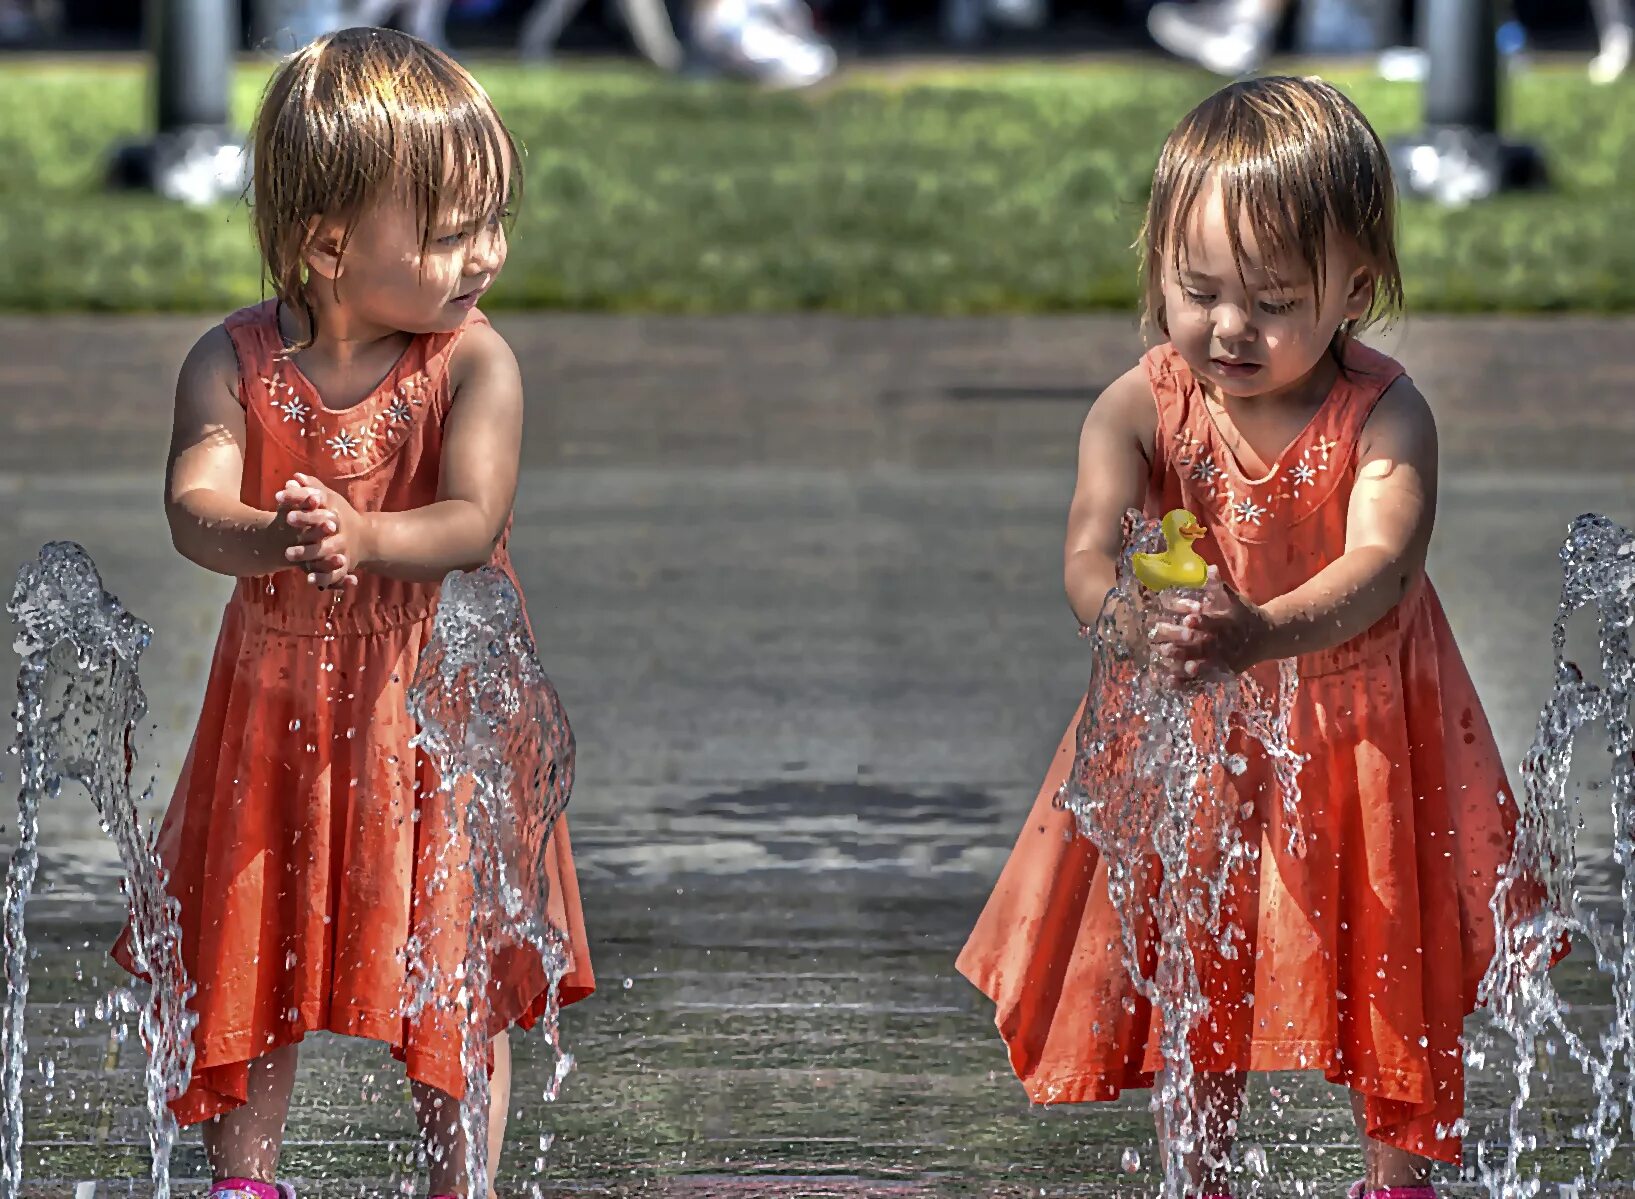 Мокрое платье для детей. Дети играют в мокрой одежде. Мокрое платье картинка для детей. Фликр девочка фонтан.